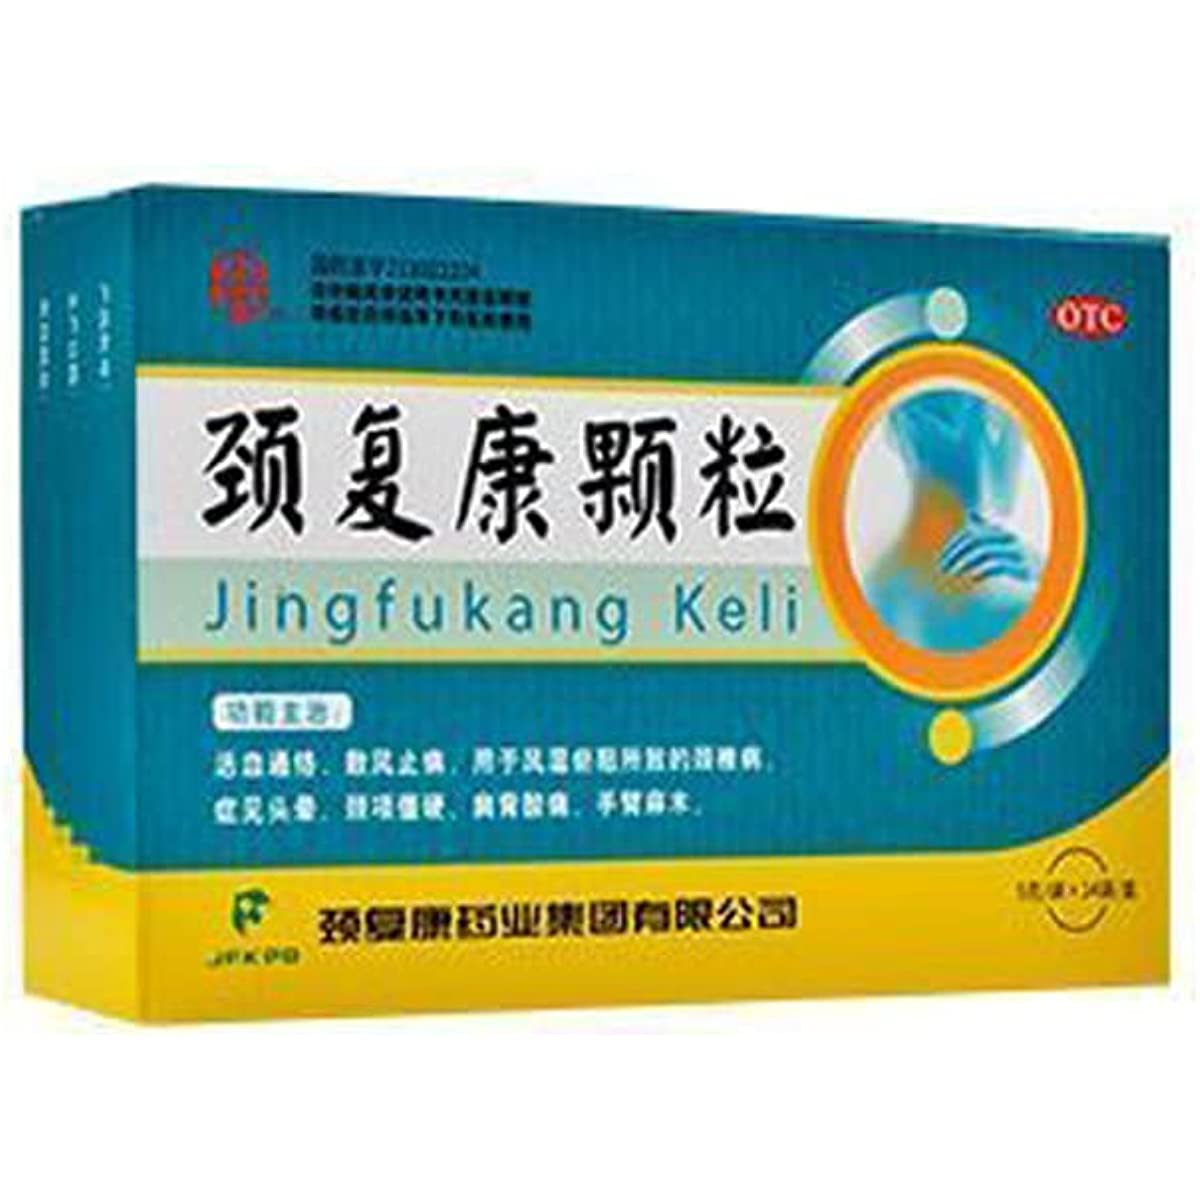 1 Box, Jingfukang Keli 14 Bags/Box 颈复康颗粒